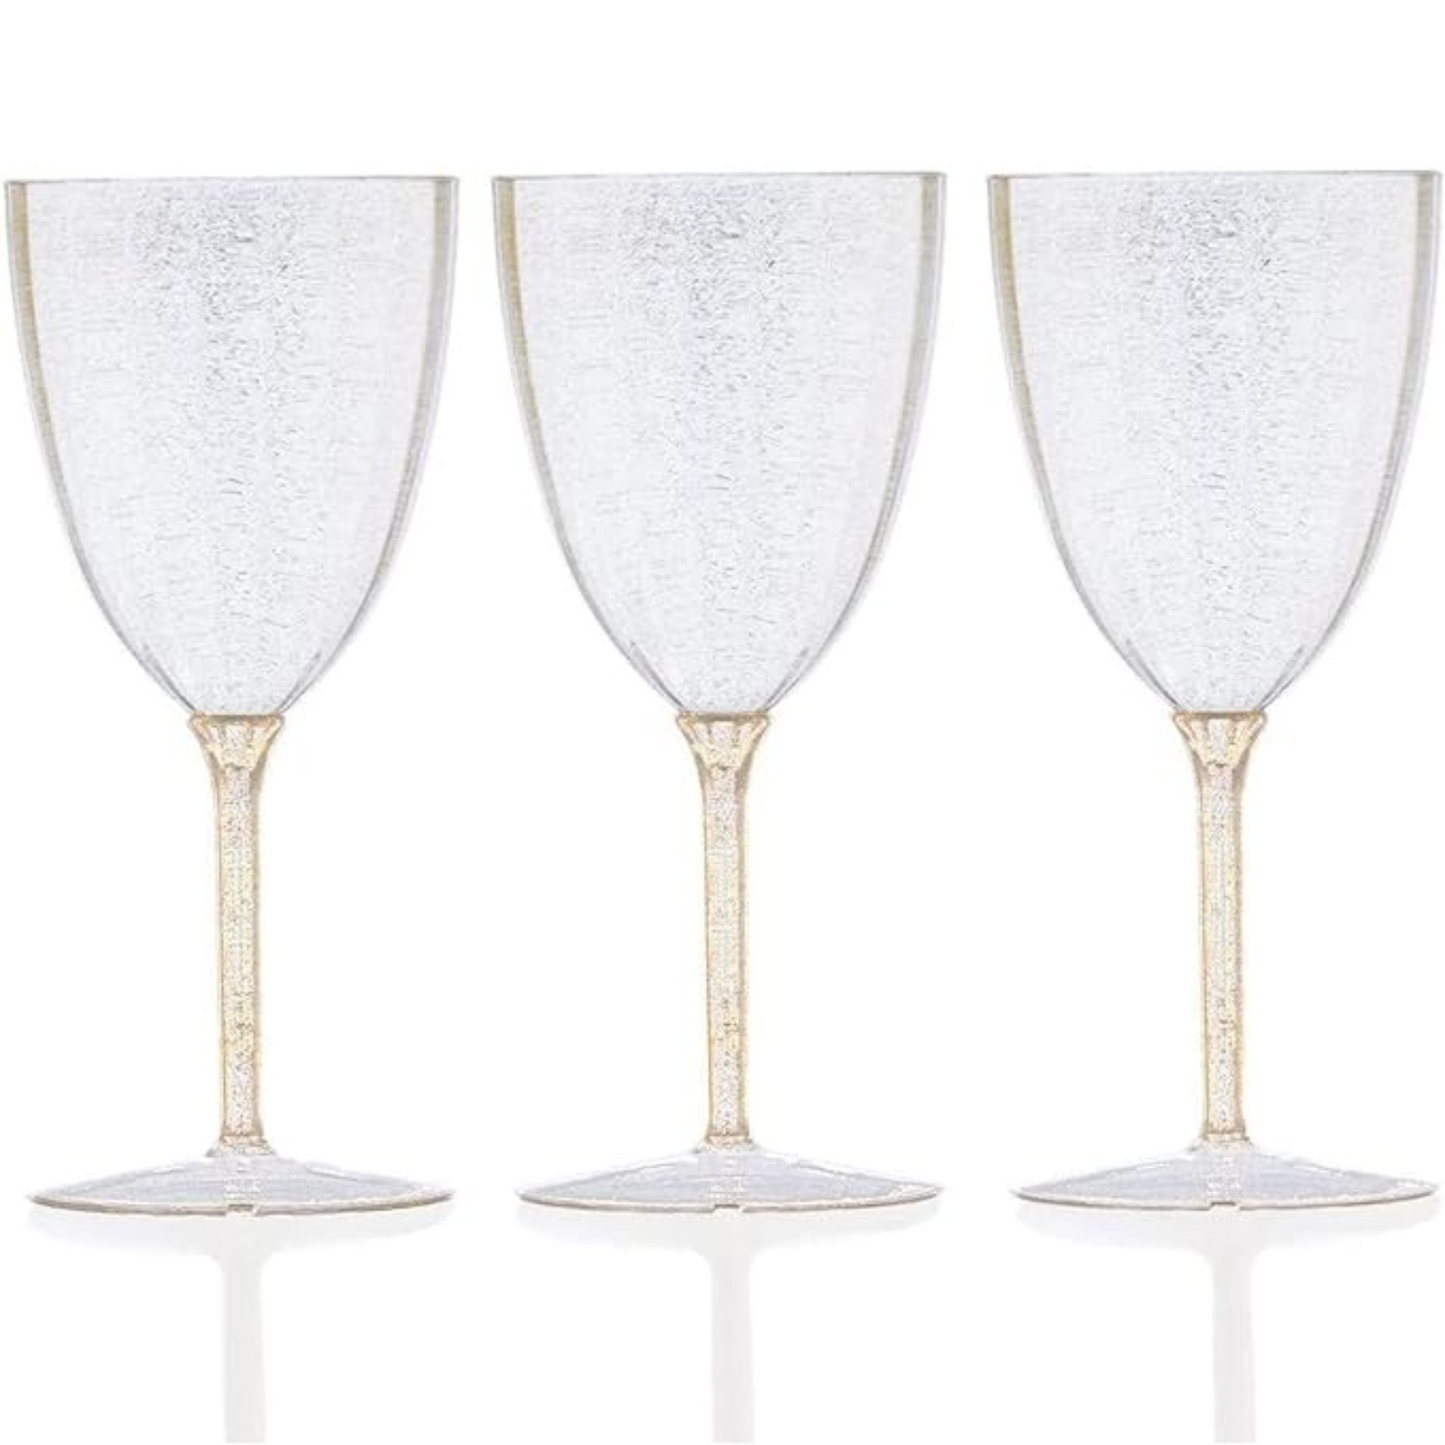 Gold Glitter Disposable Plastic Wine Glasses Goblet 7 oz Cups Nicole Fantini   